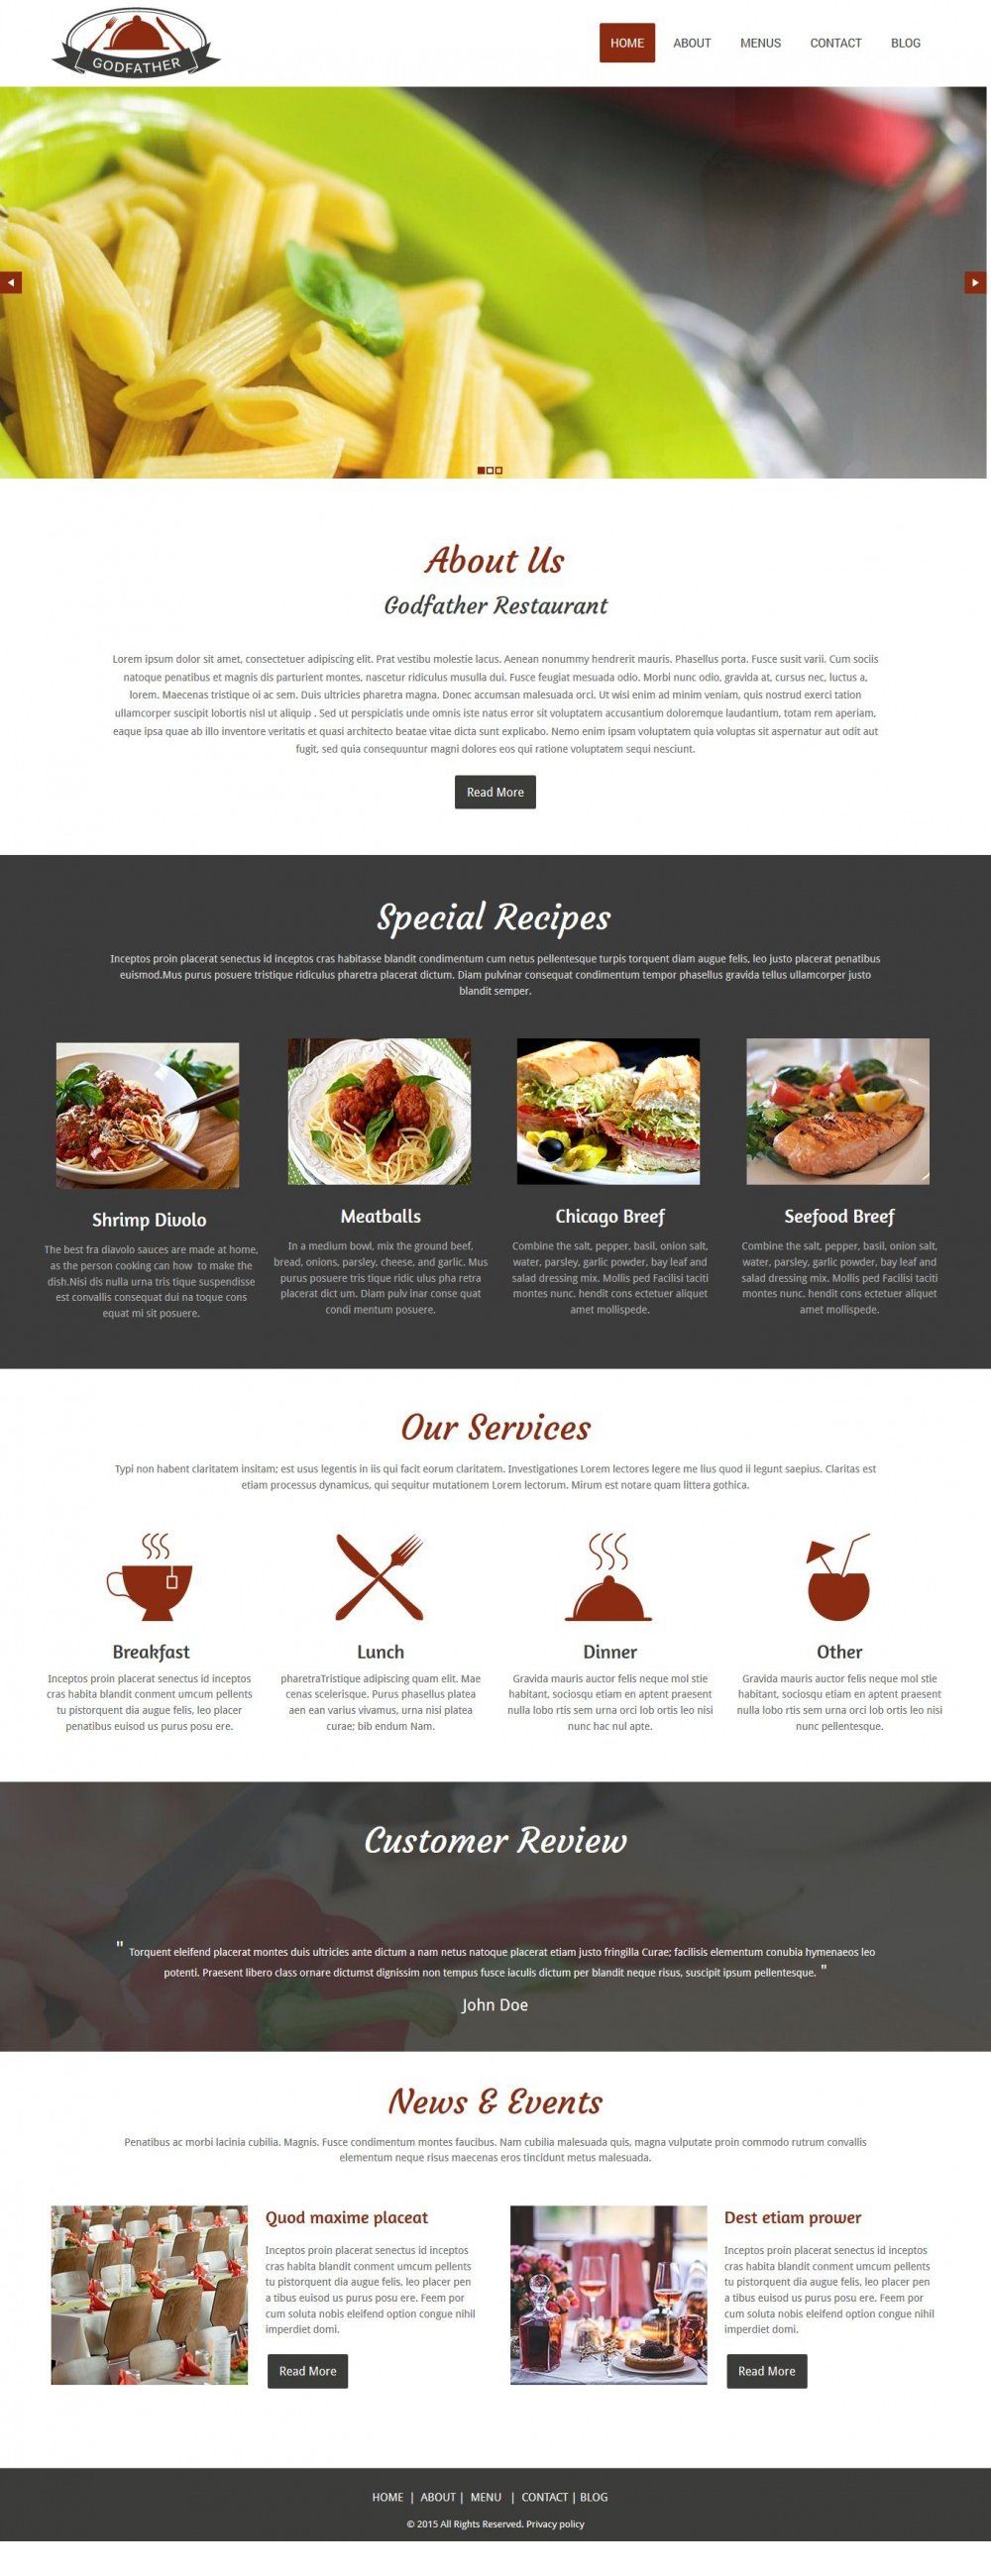 Godfather - WordPress Theme for Cafe/Restaurant